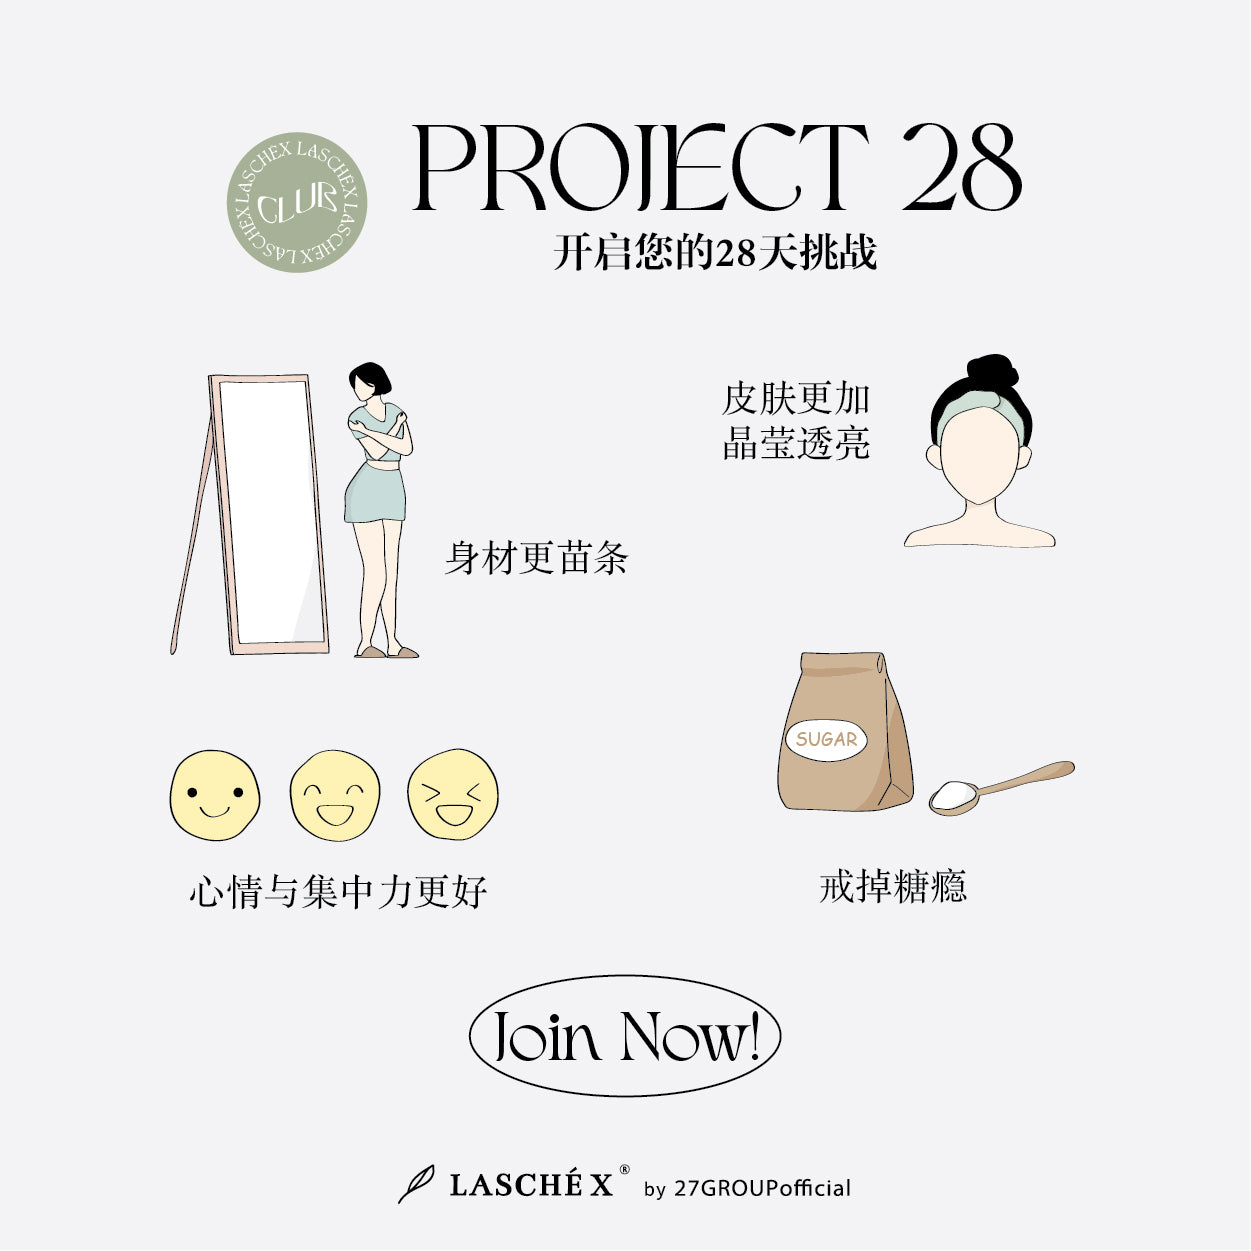 Project28让您身材苗条，皮肤透亮， 戒掉糖瘾，更集中